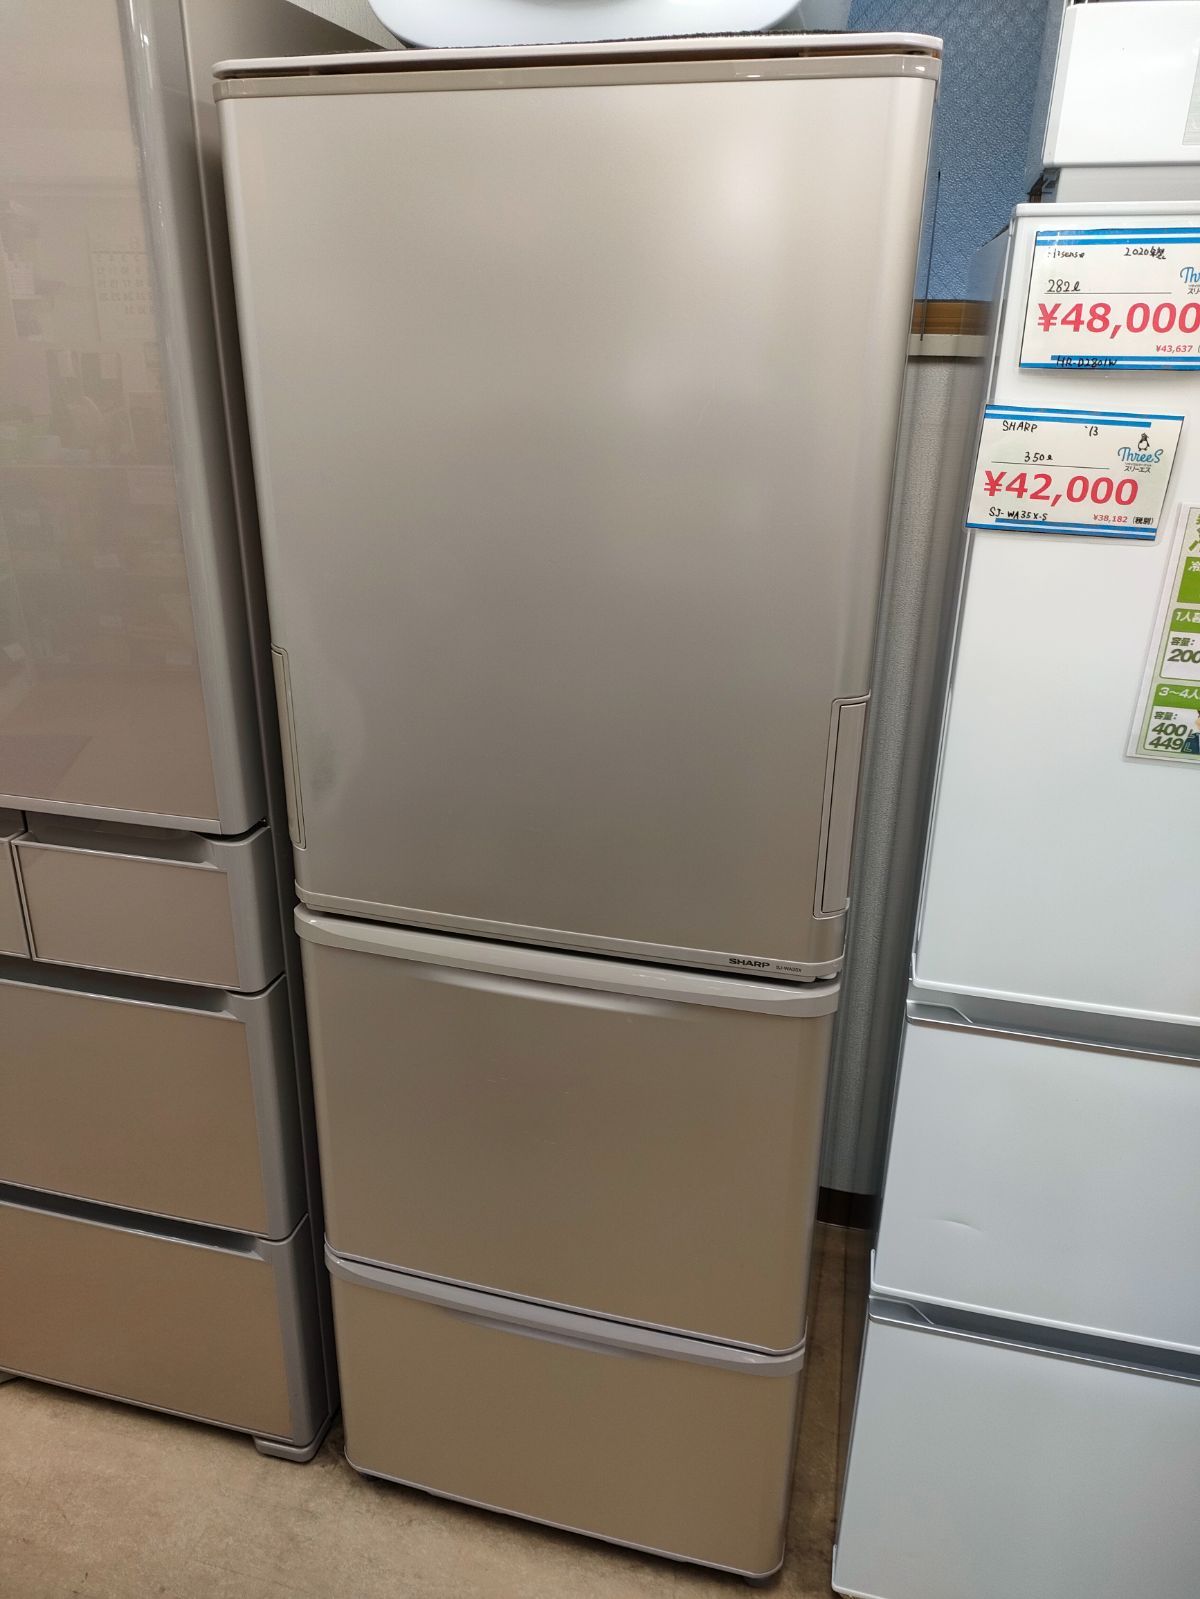 11,408円2012年式 350L SHARP 冷凍冷蔵庫 SJ-WA35W-S